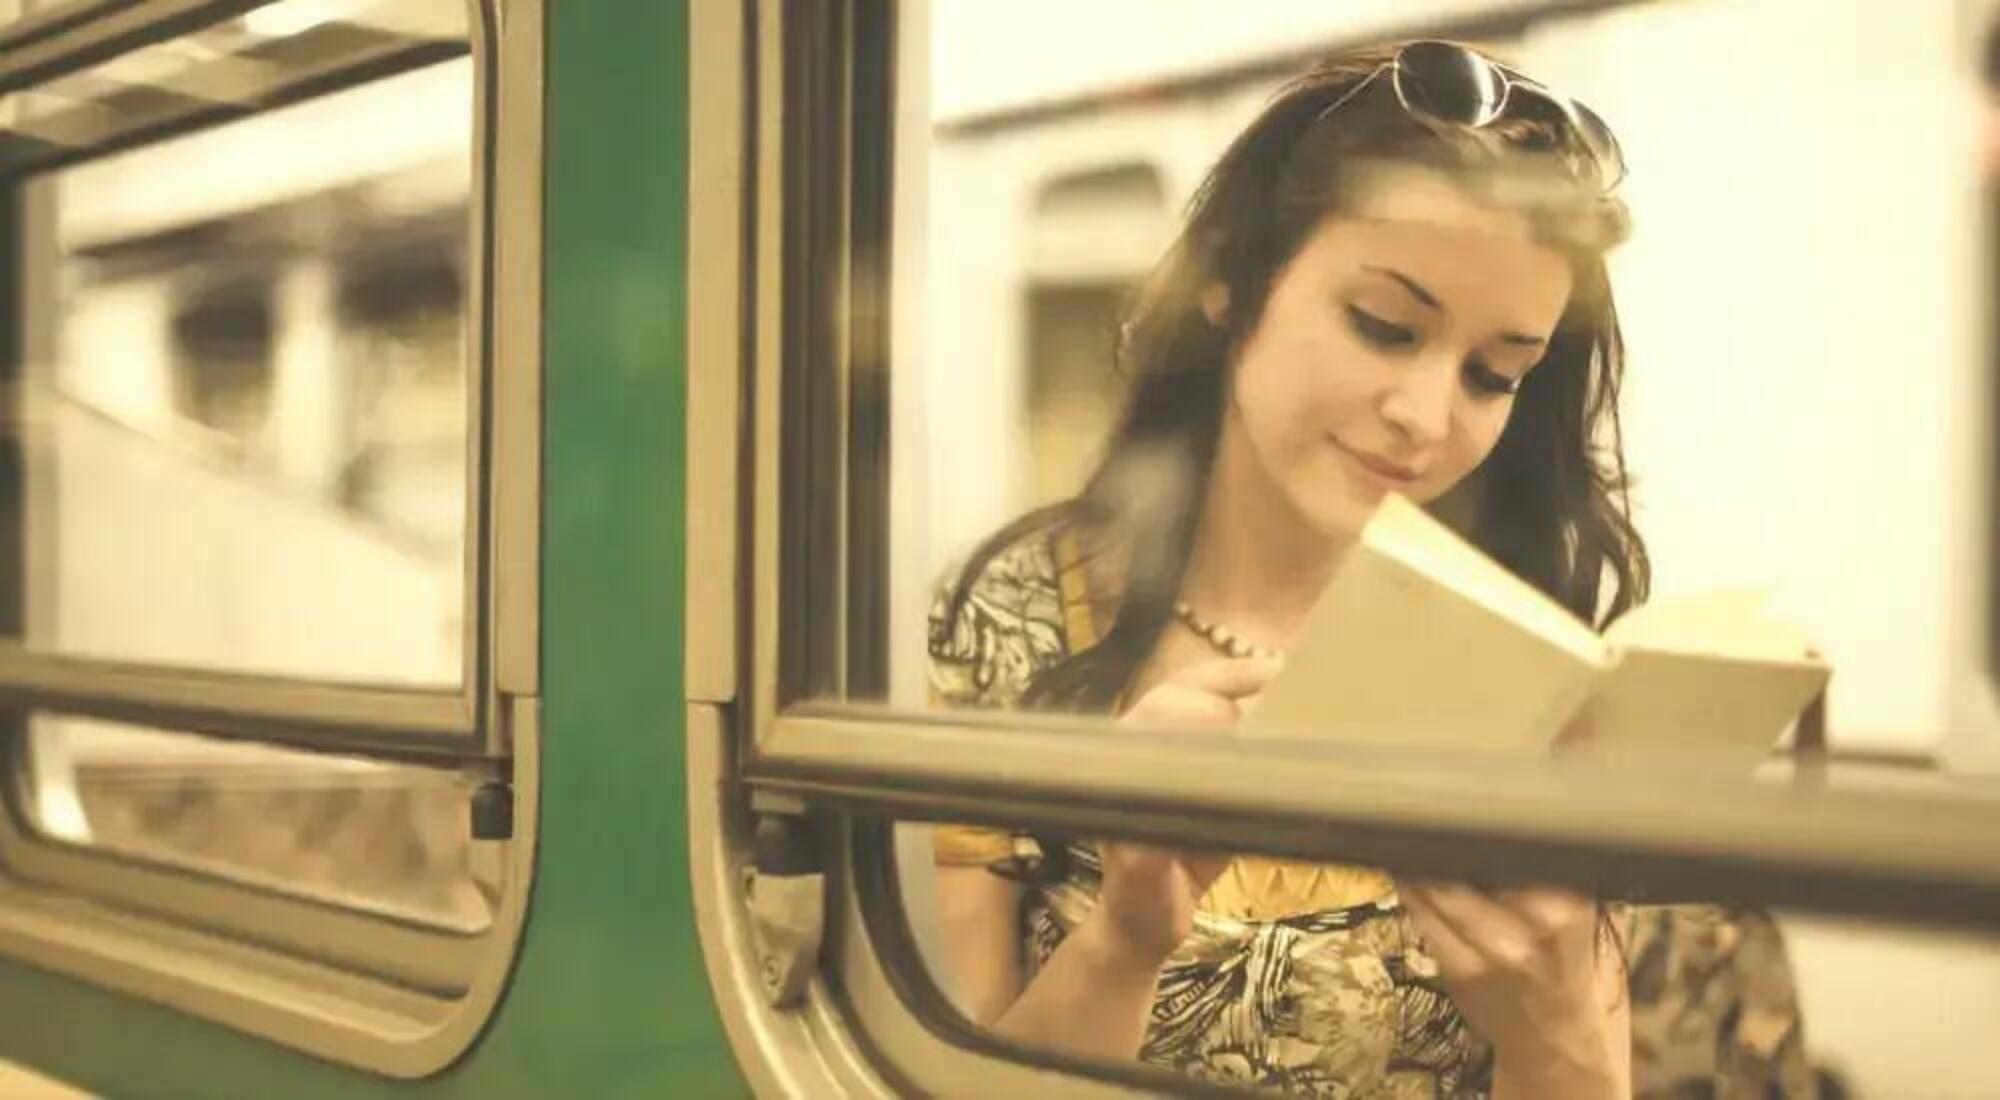 I libri pi&ugrave; letti in treno e sui mezzi pubblici secondo Trainline